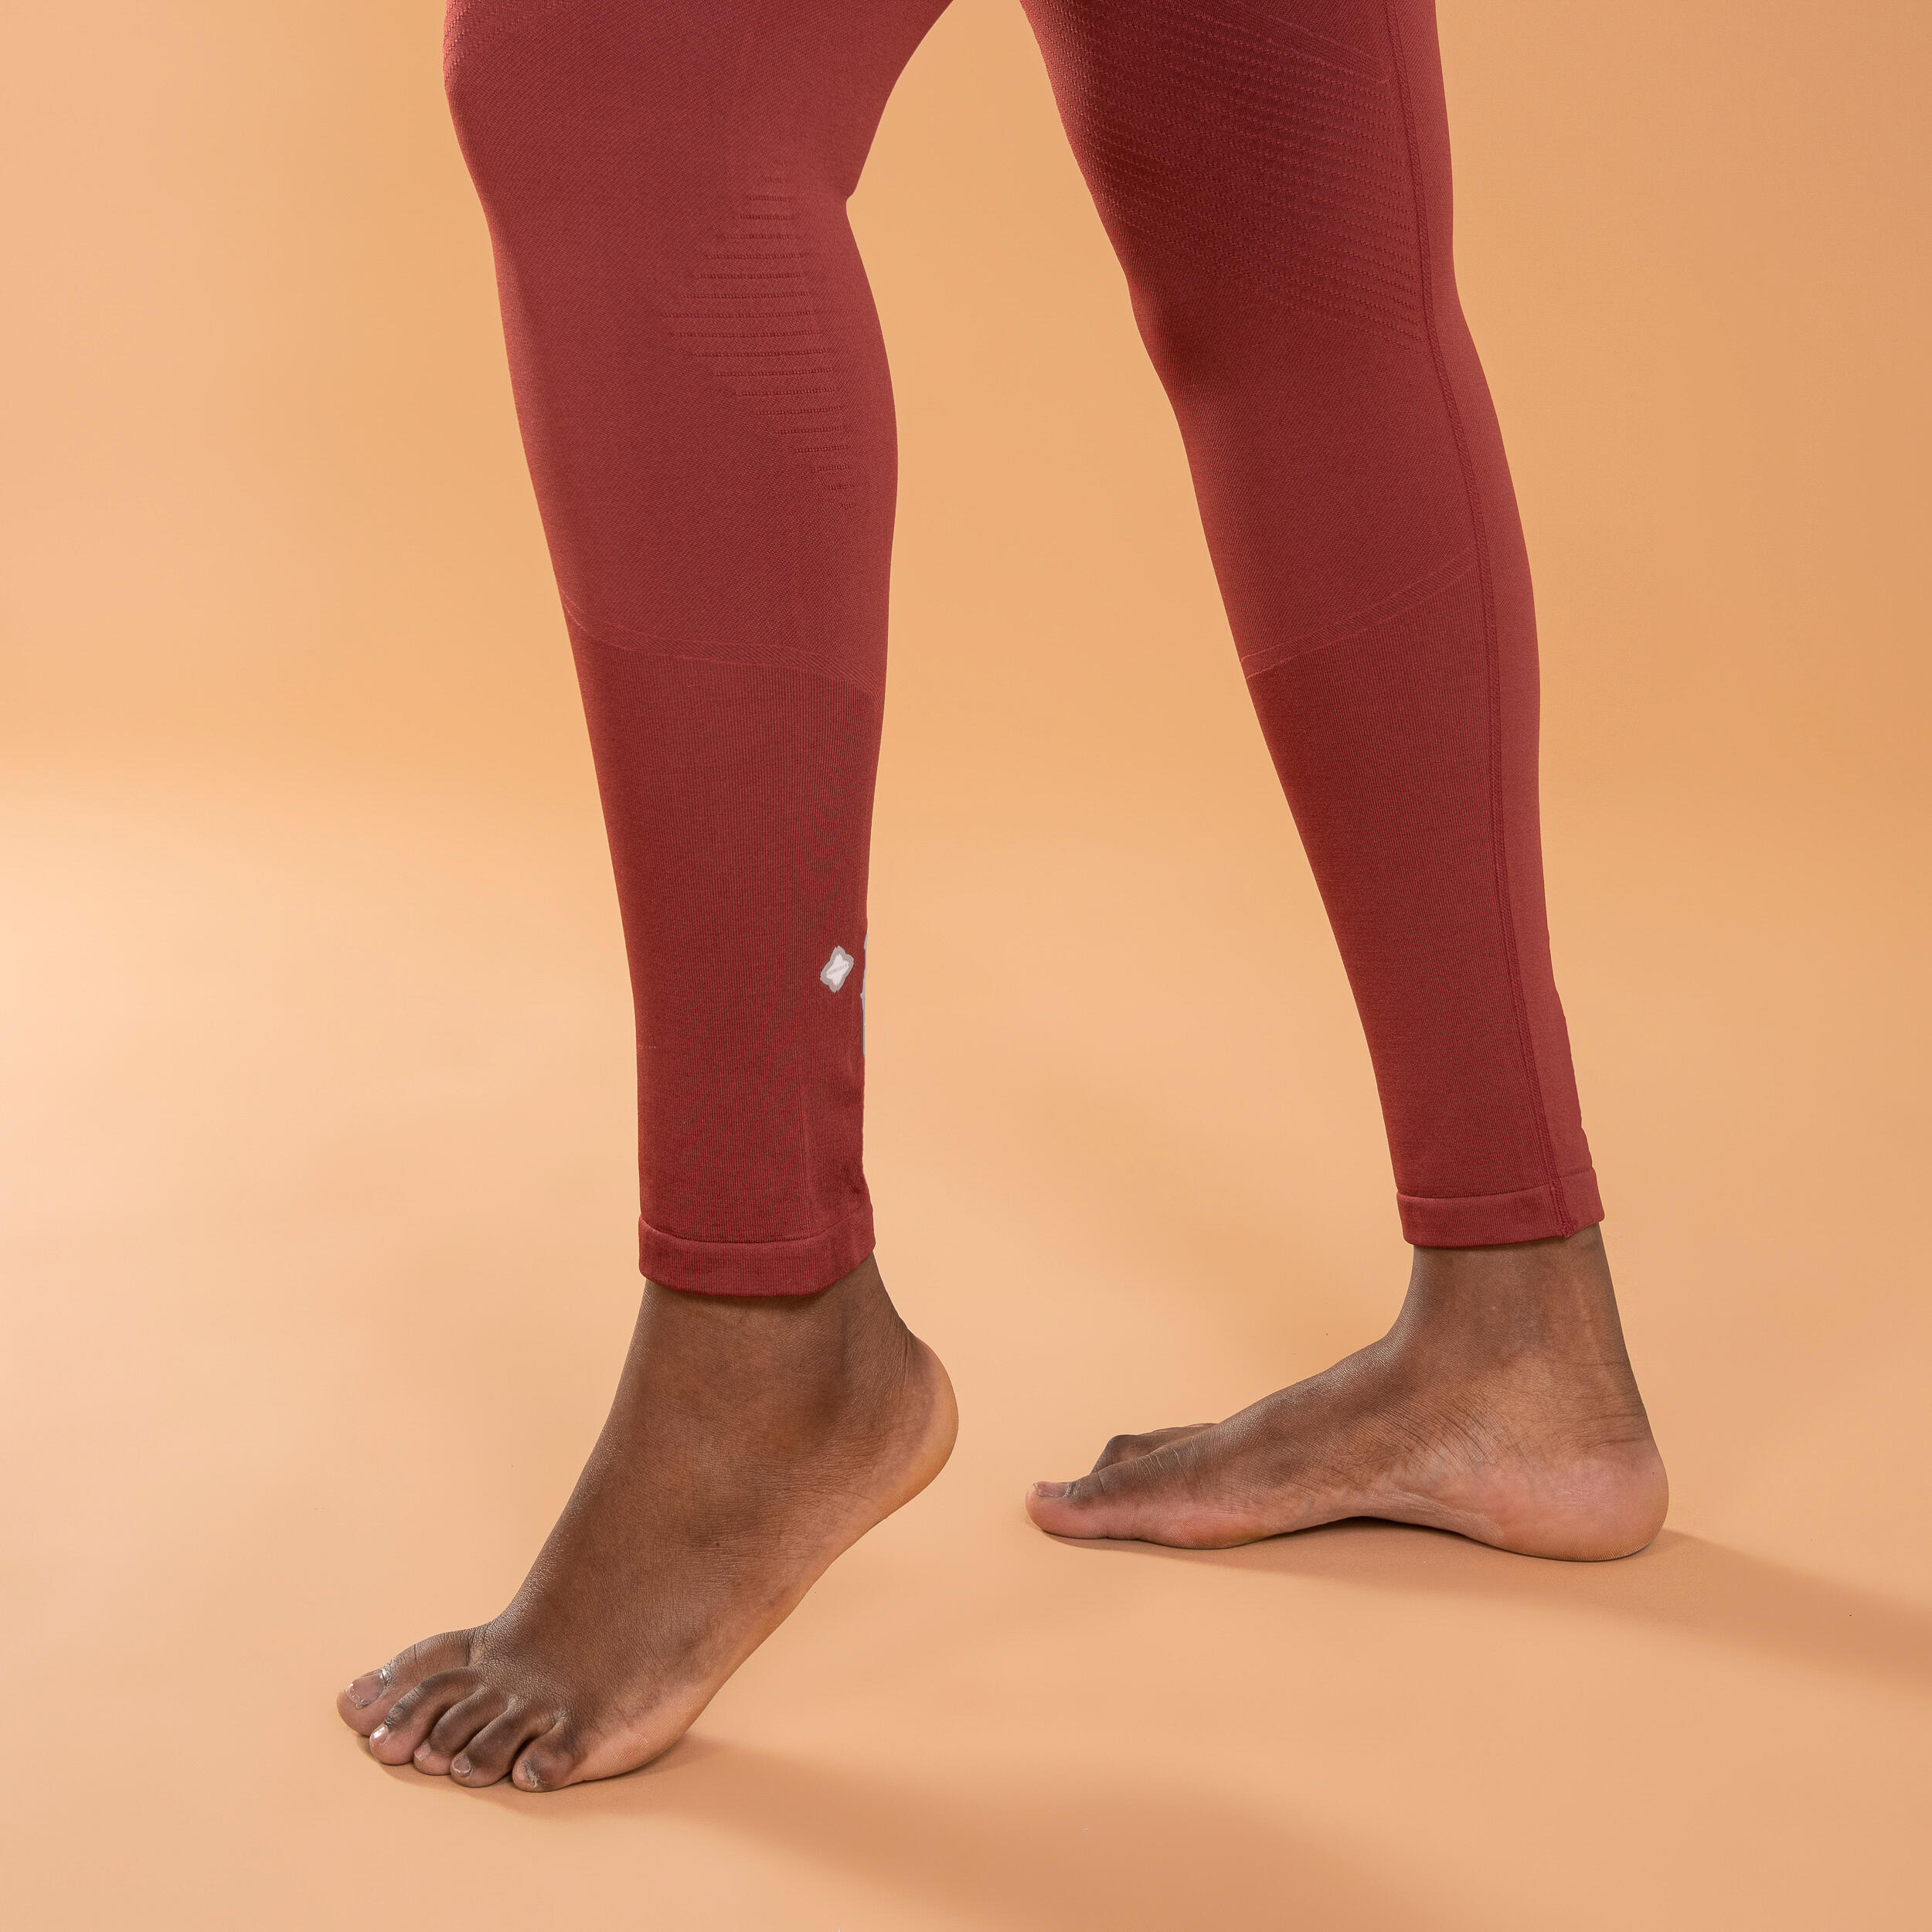 Women's Long Seamless Yoga Leggings - Burgundy 6/6